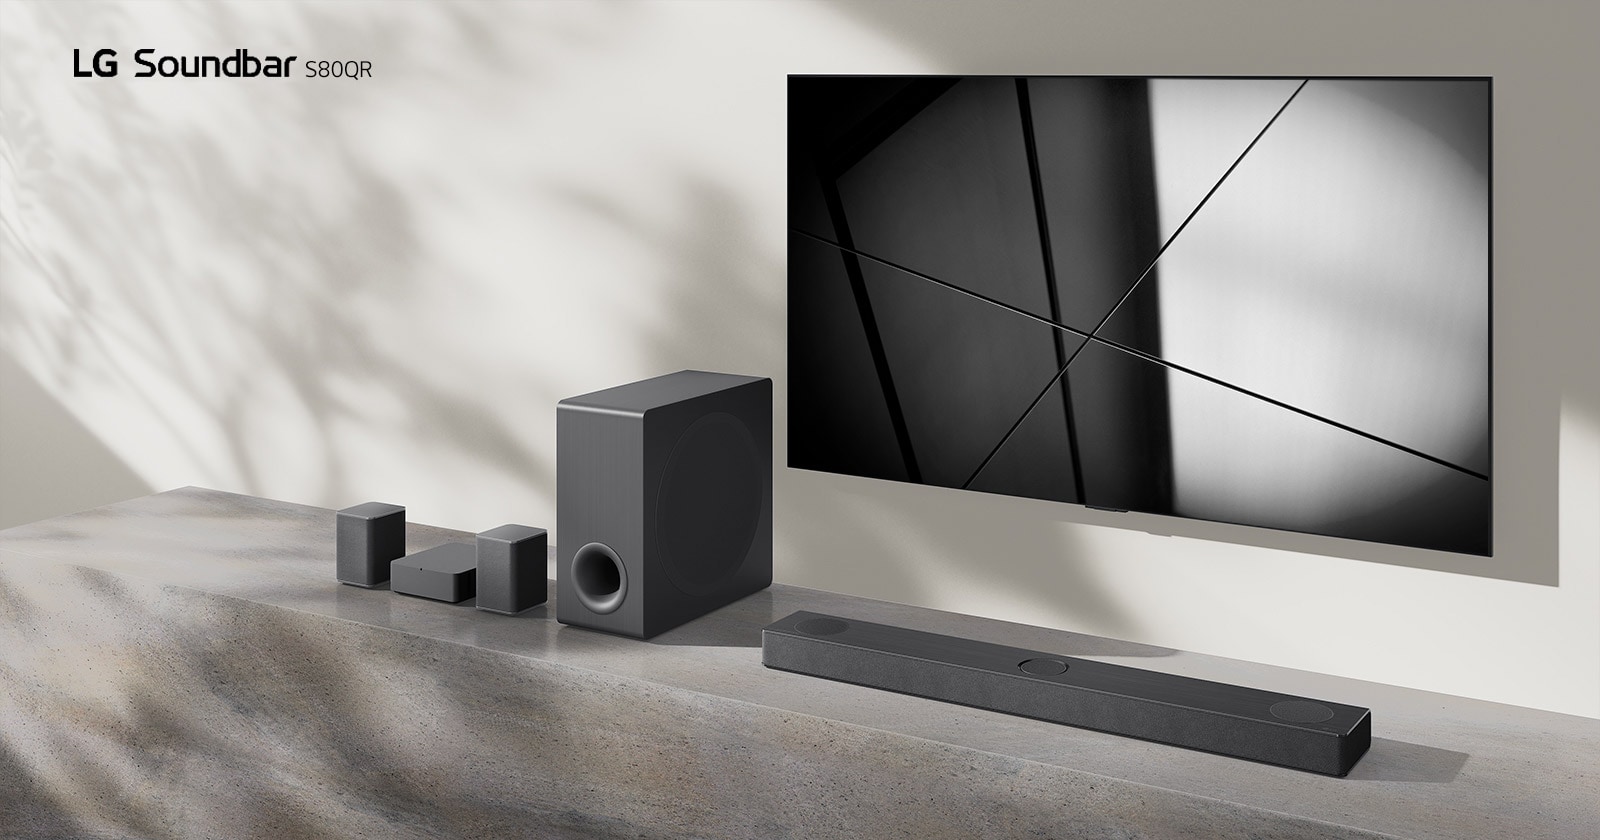 Саундбар LG S80QR и телевизор LG расположены вместе в гостиной. Телевизор включен, показывает черно-белое изображение.